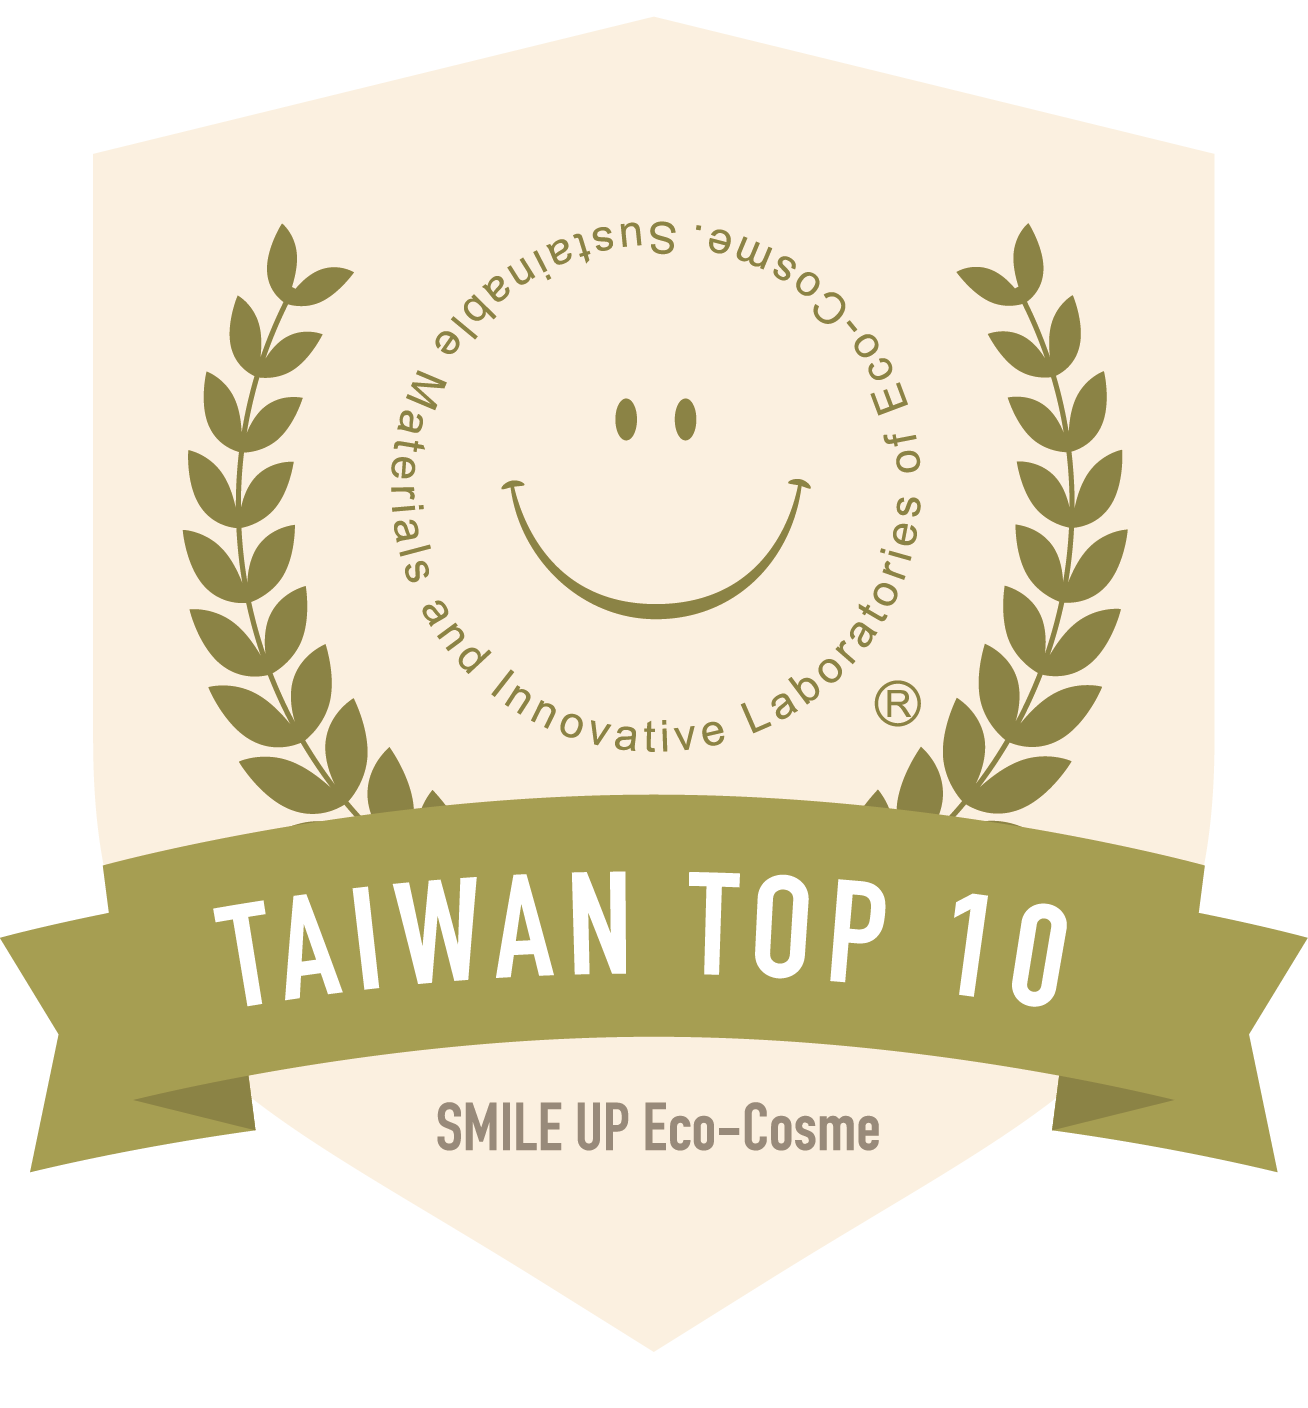 Taiwan Top 10